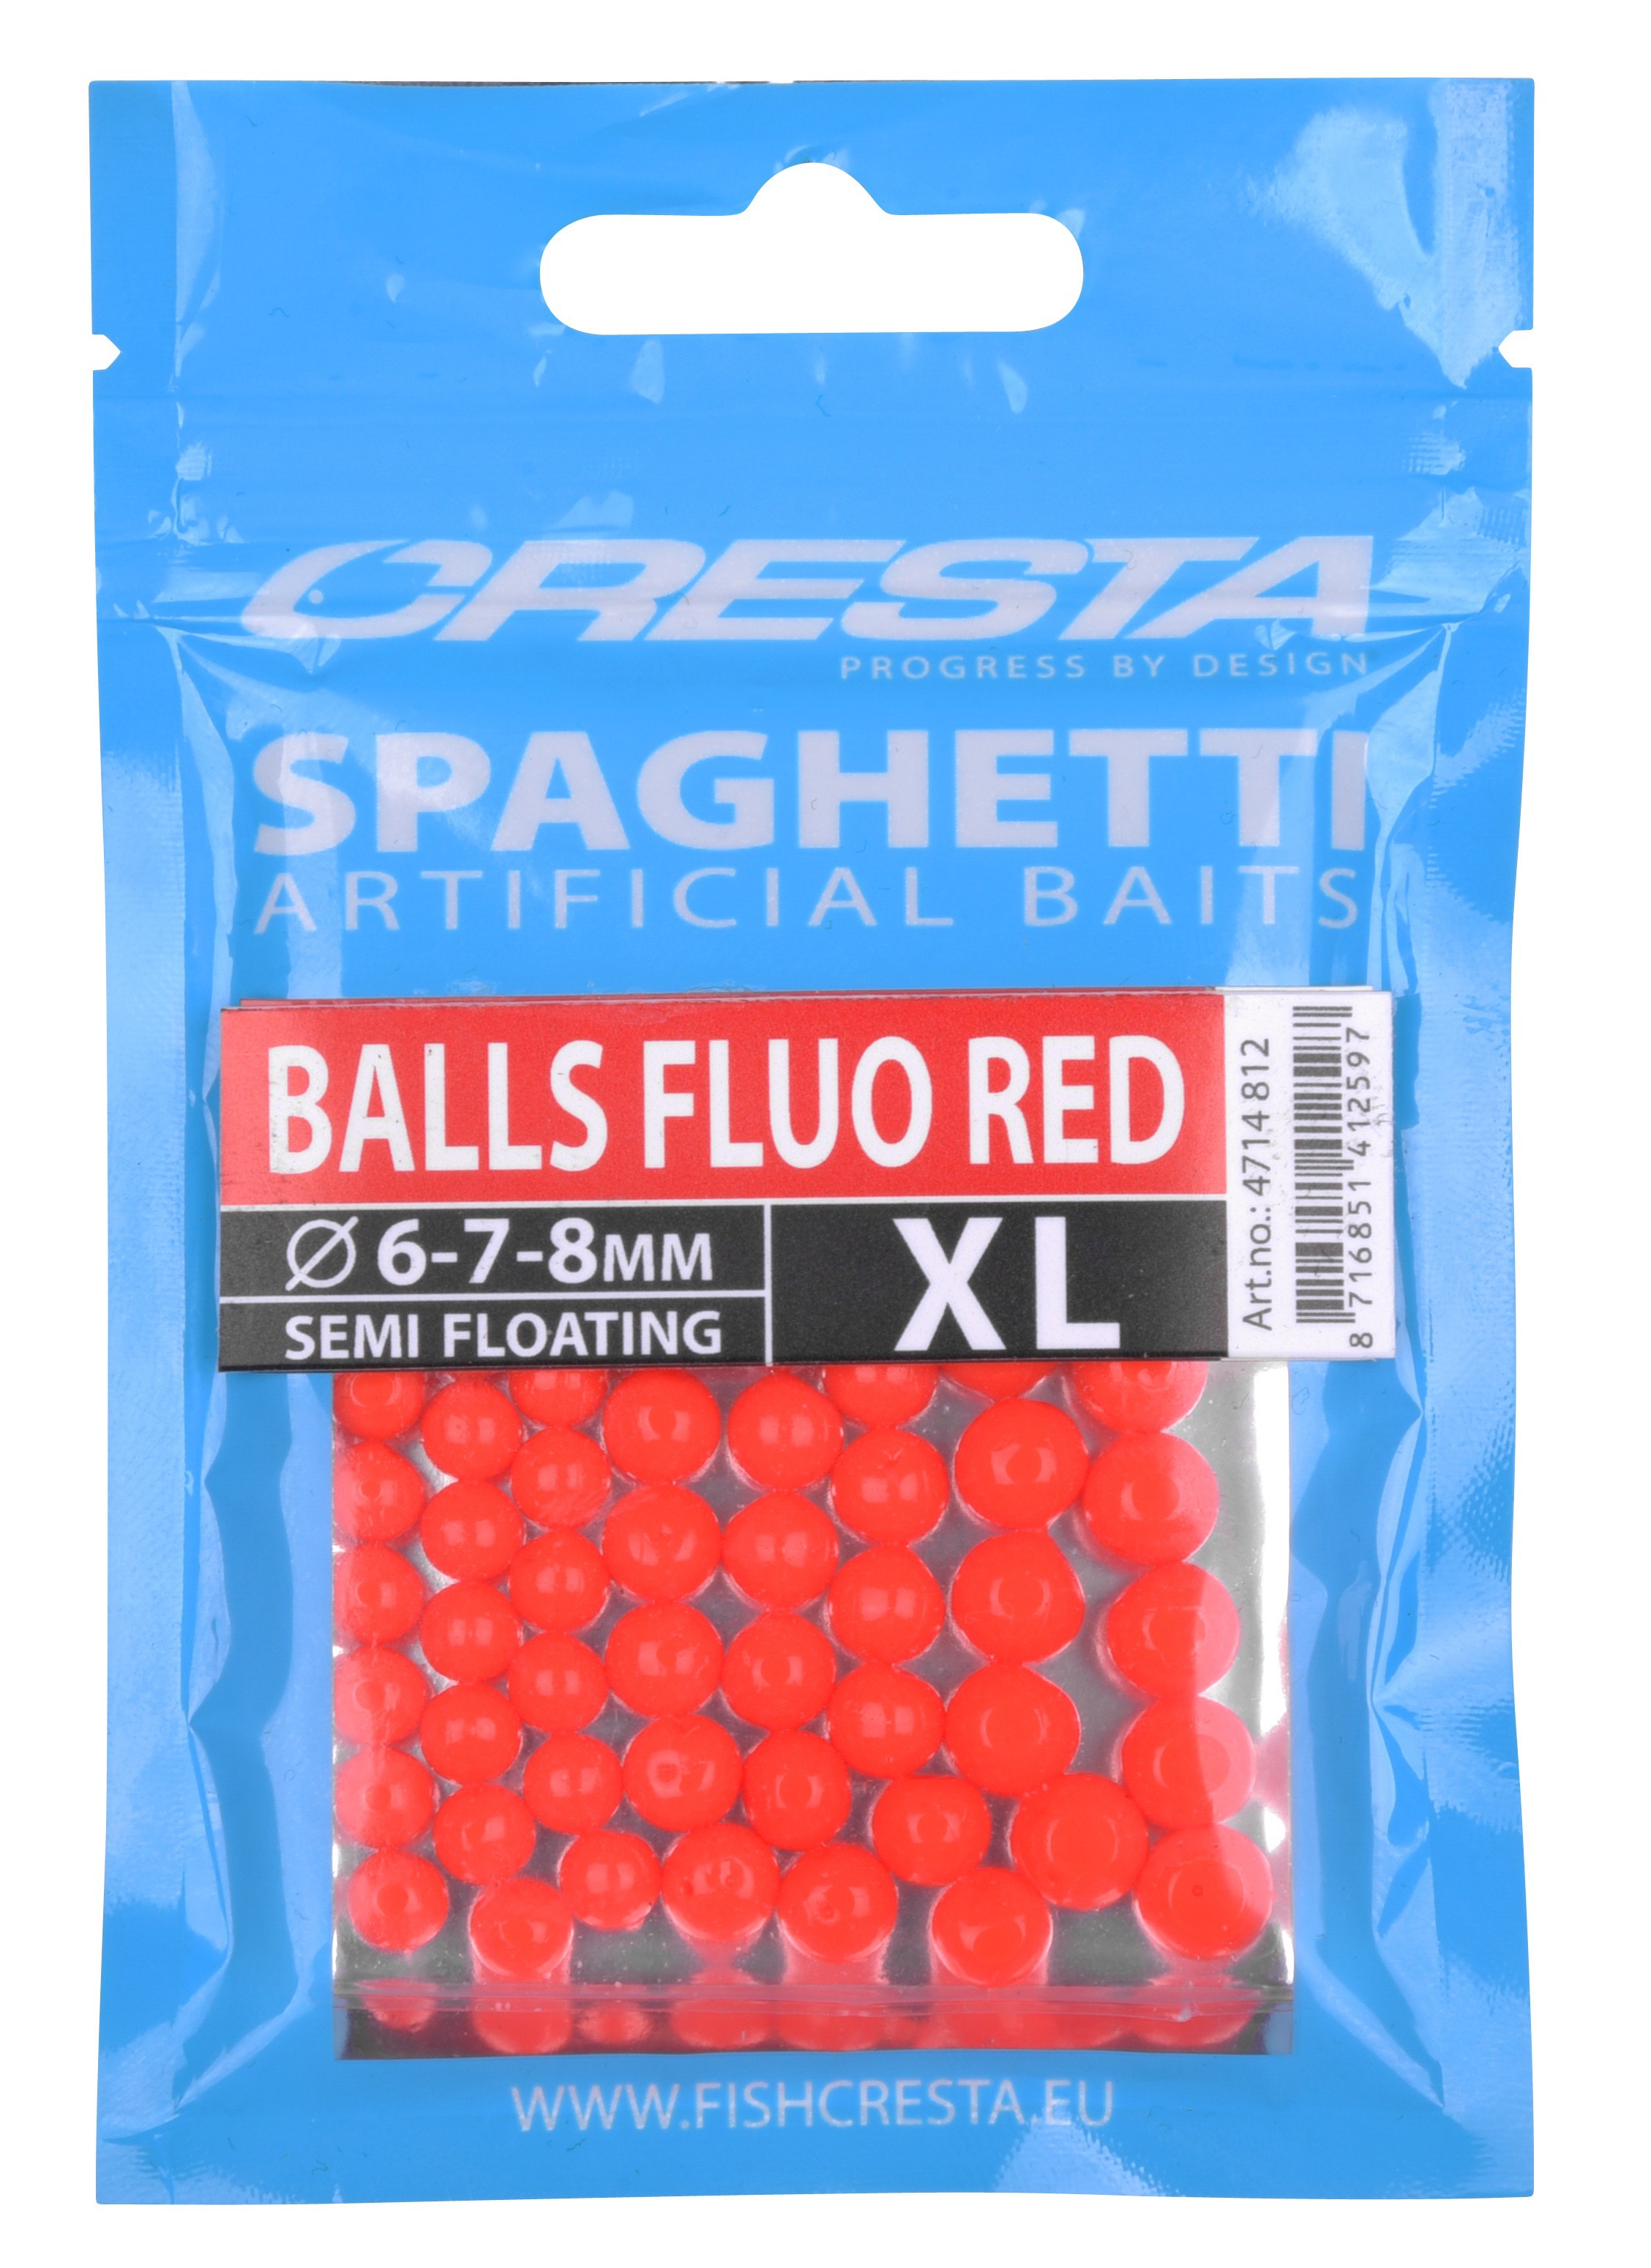 Cresta Spaghetti Balls Fluo Red XL